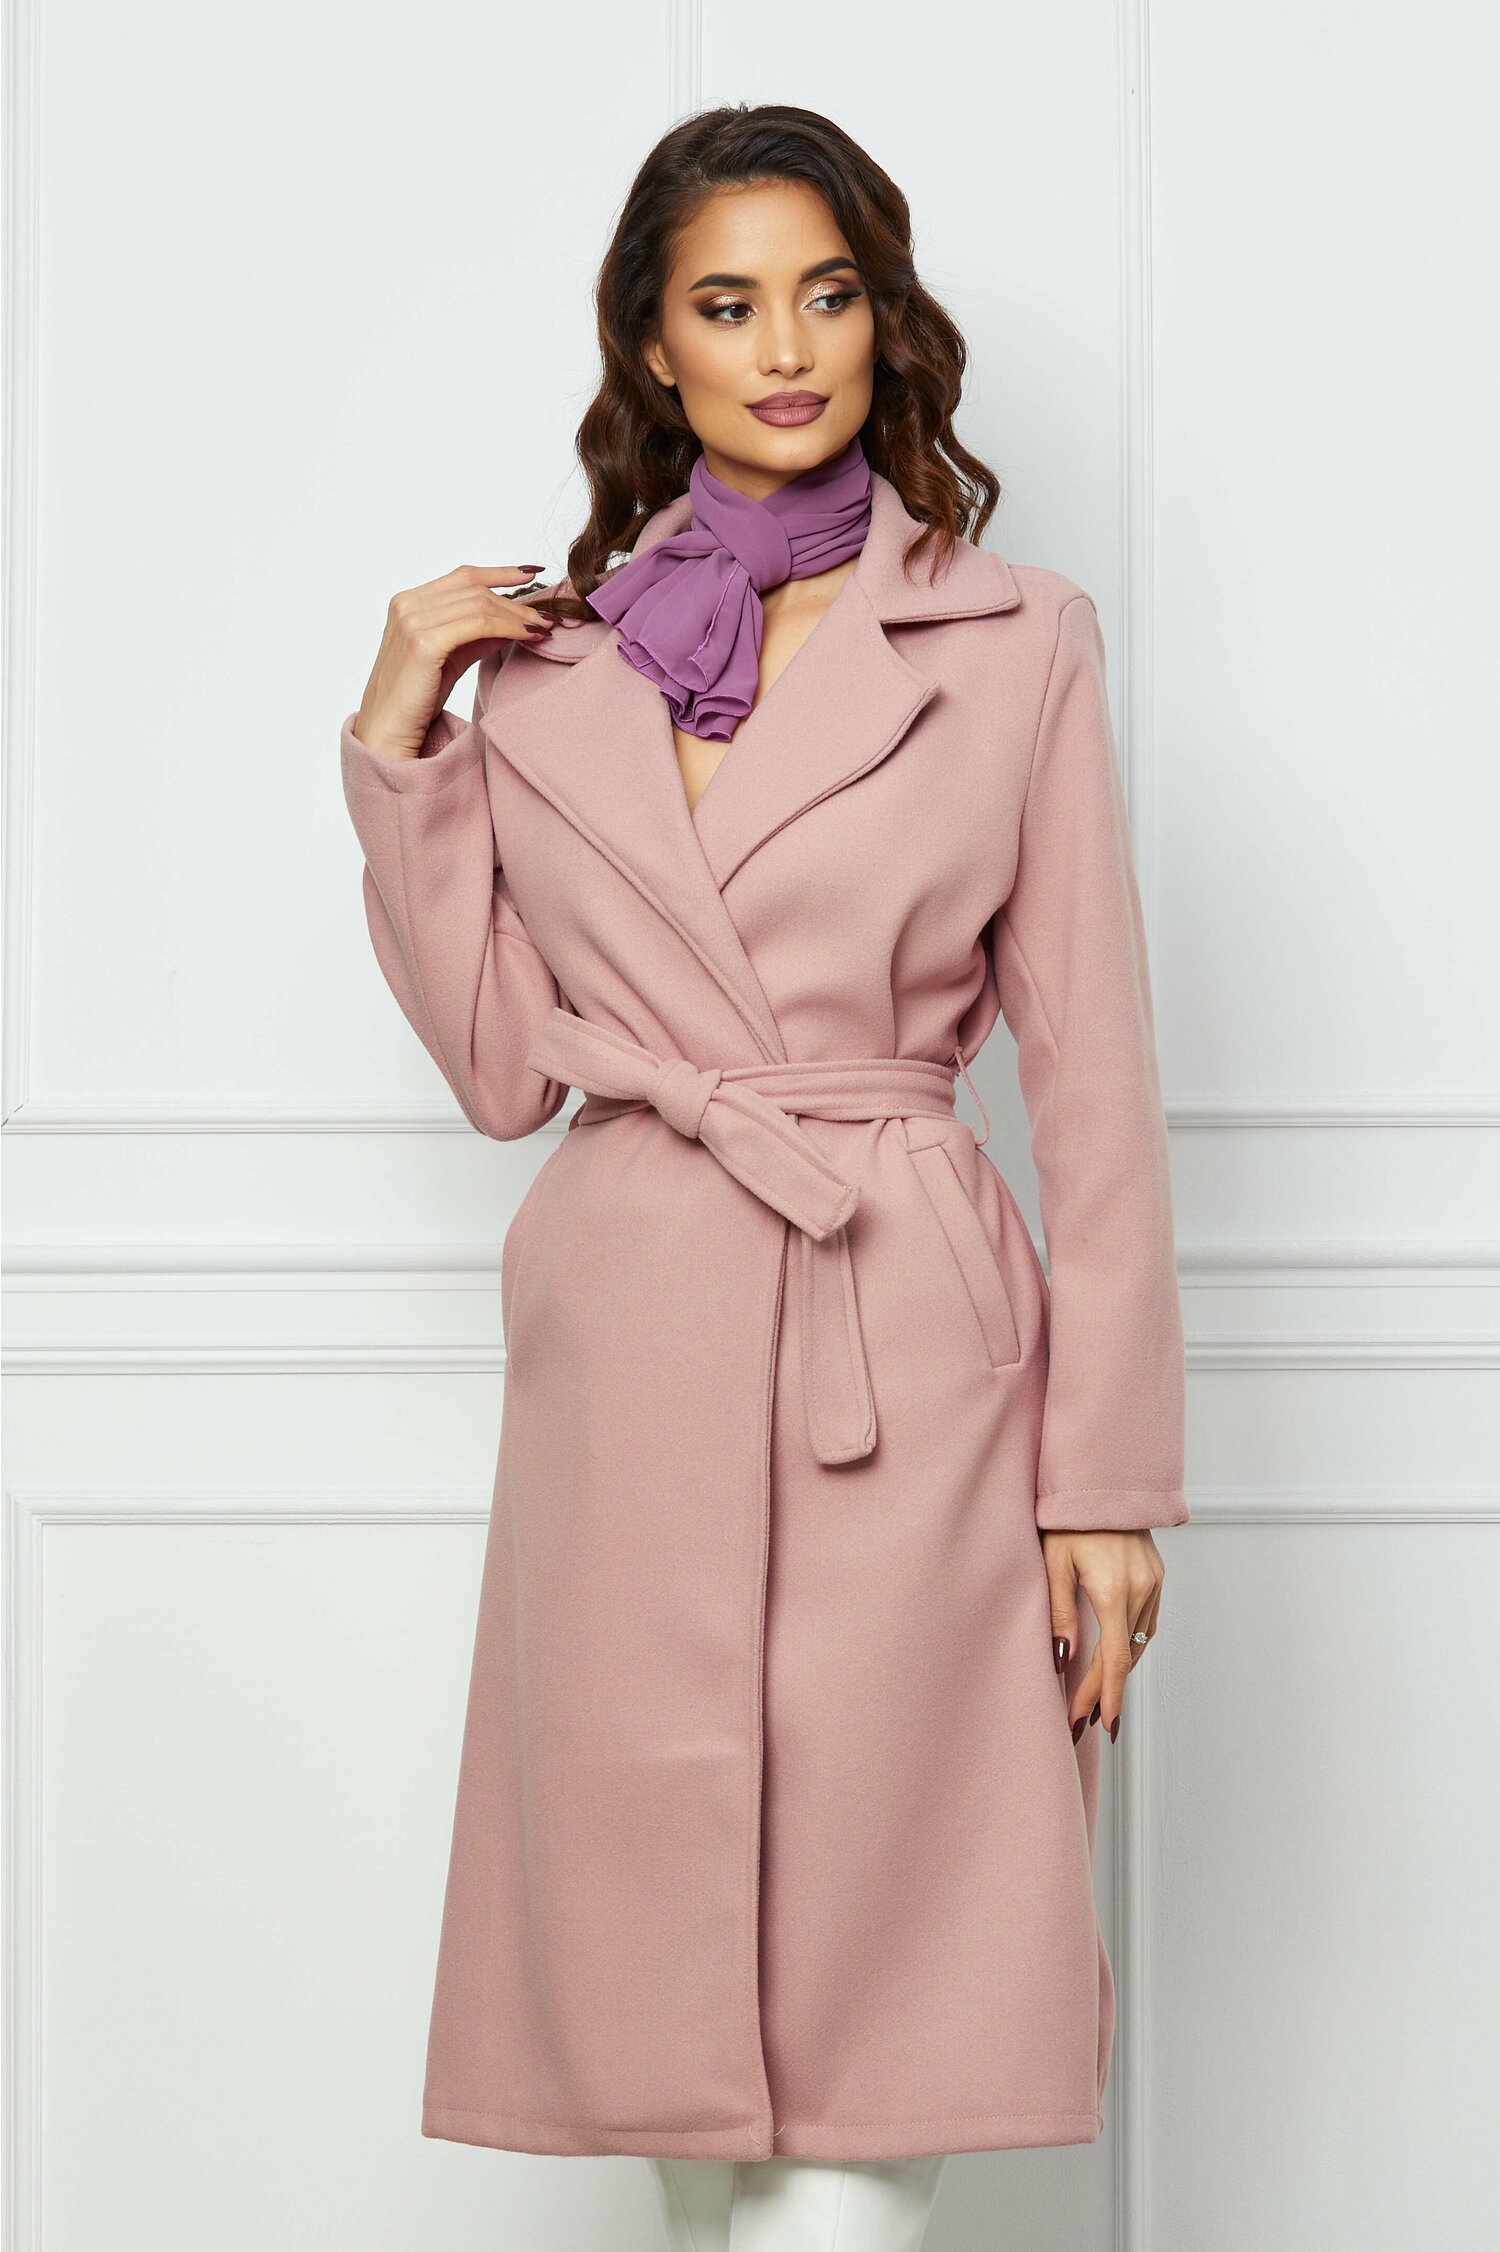 Palton Simona roz cu cordon in talie dyfashion.ro